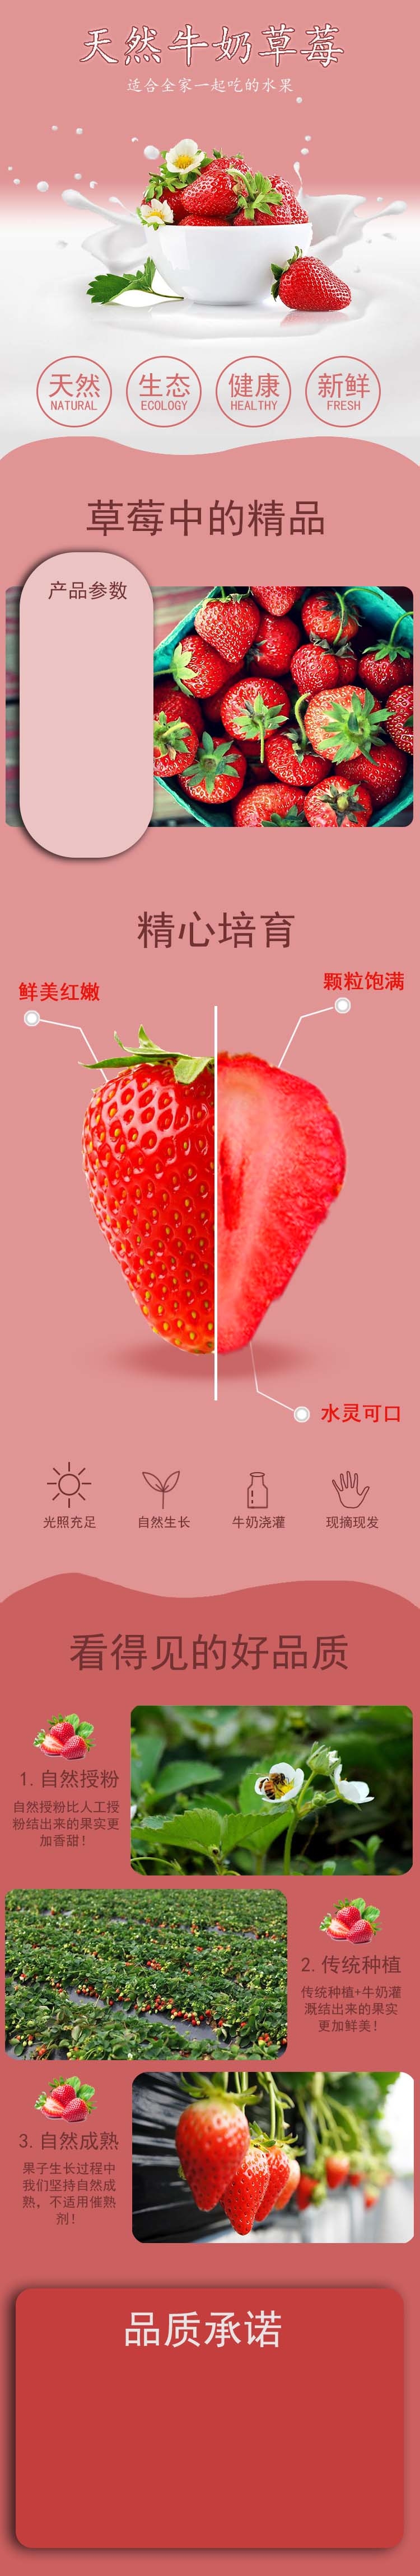 牛奶草莓详情页